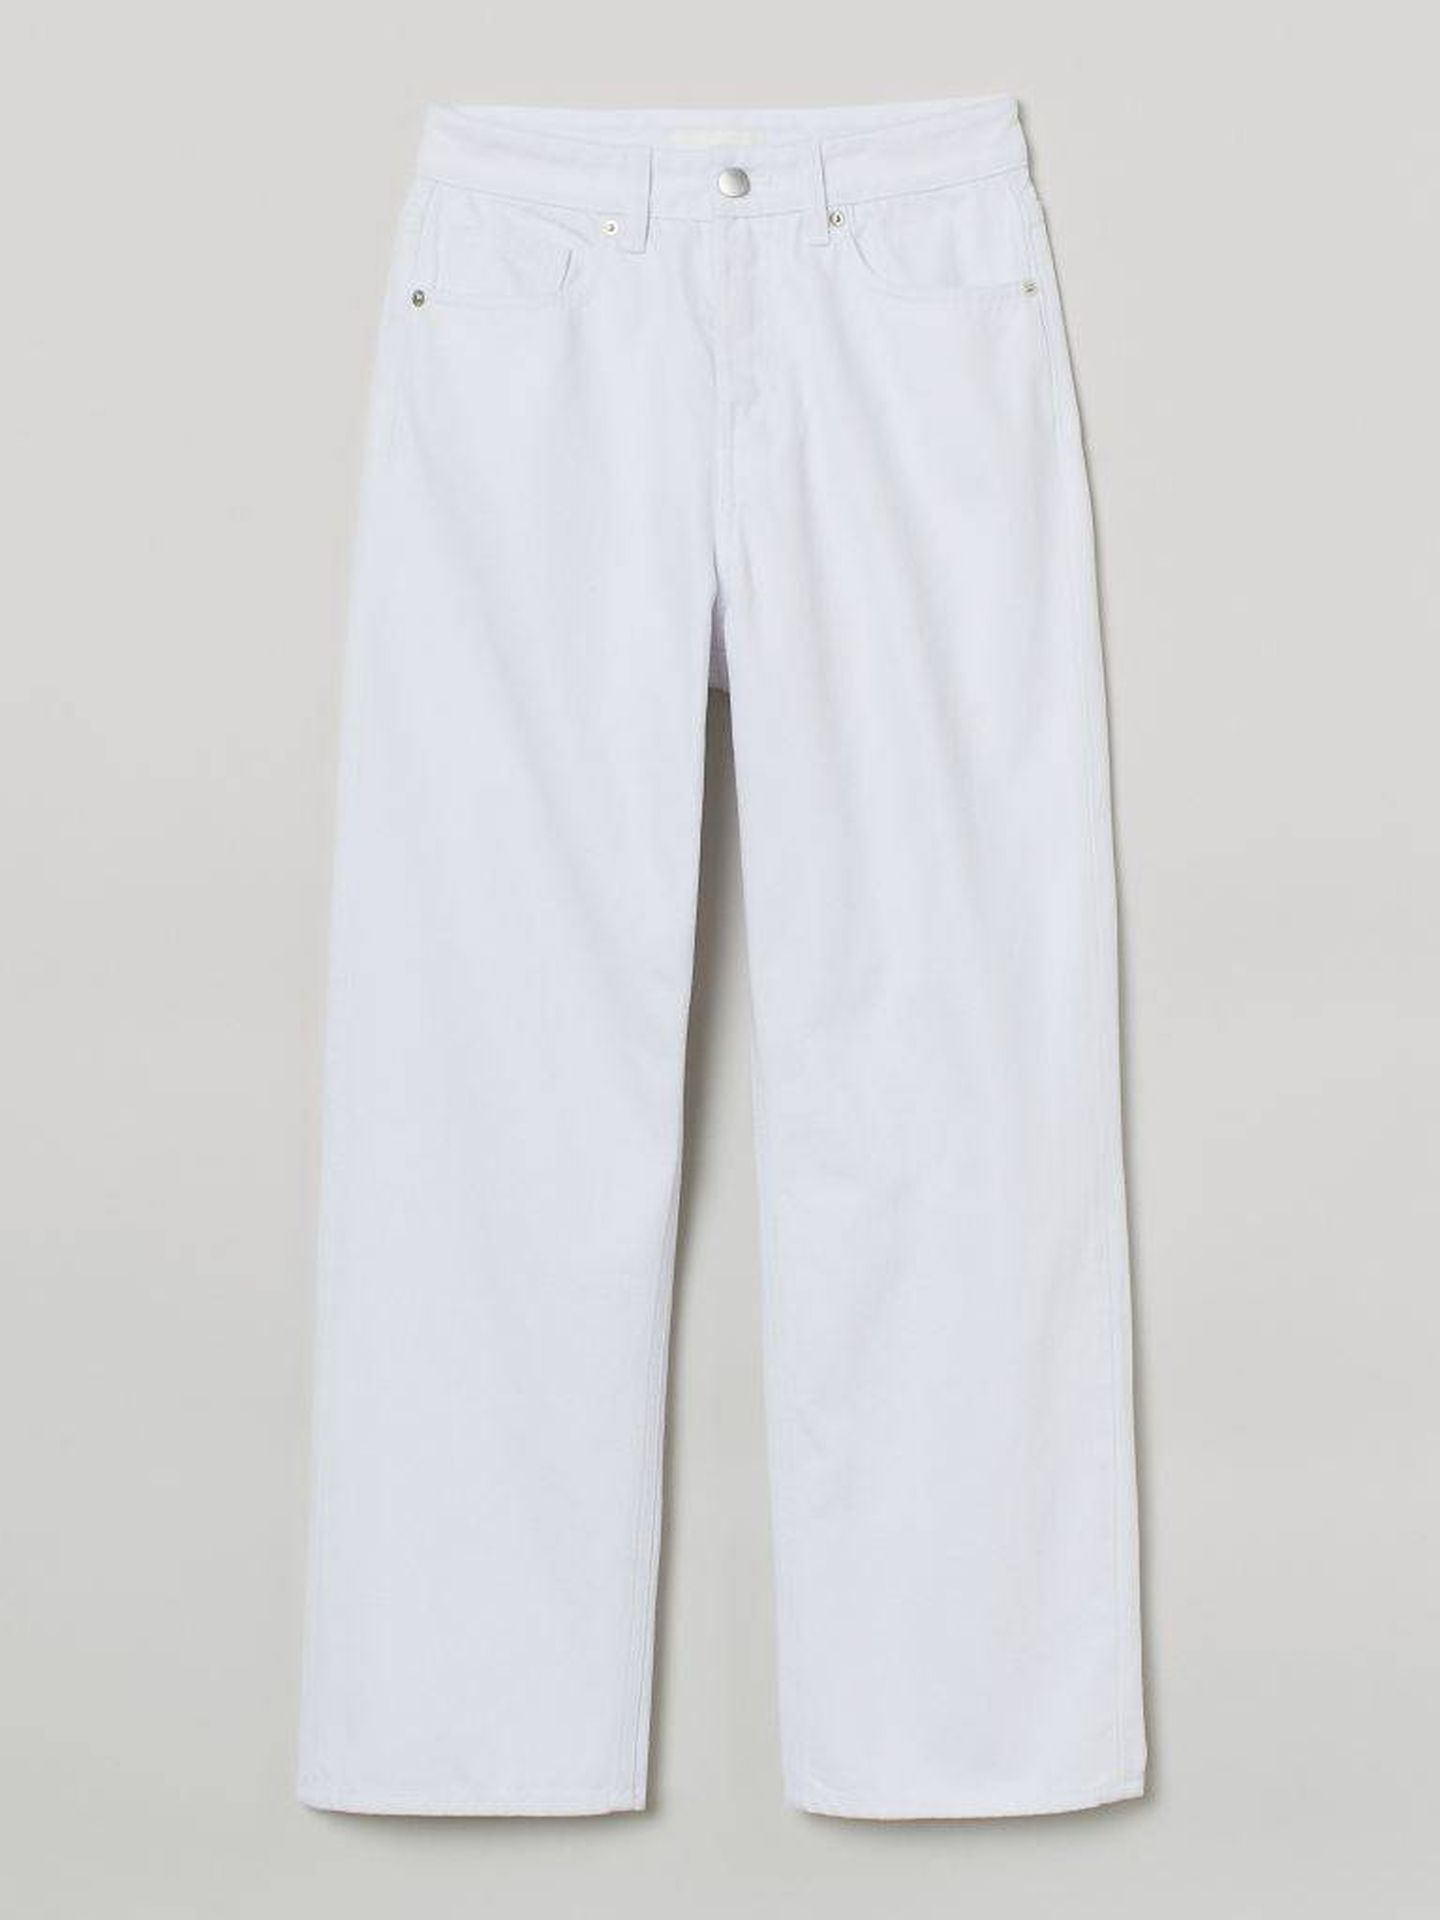 Los nuevos jeans blancos de HyM. (Cortesía)